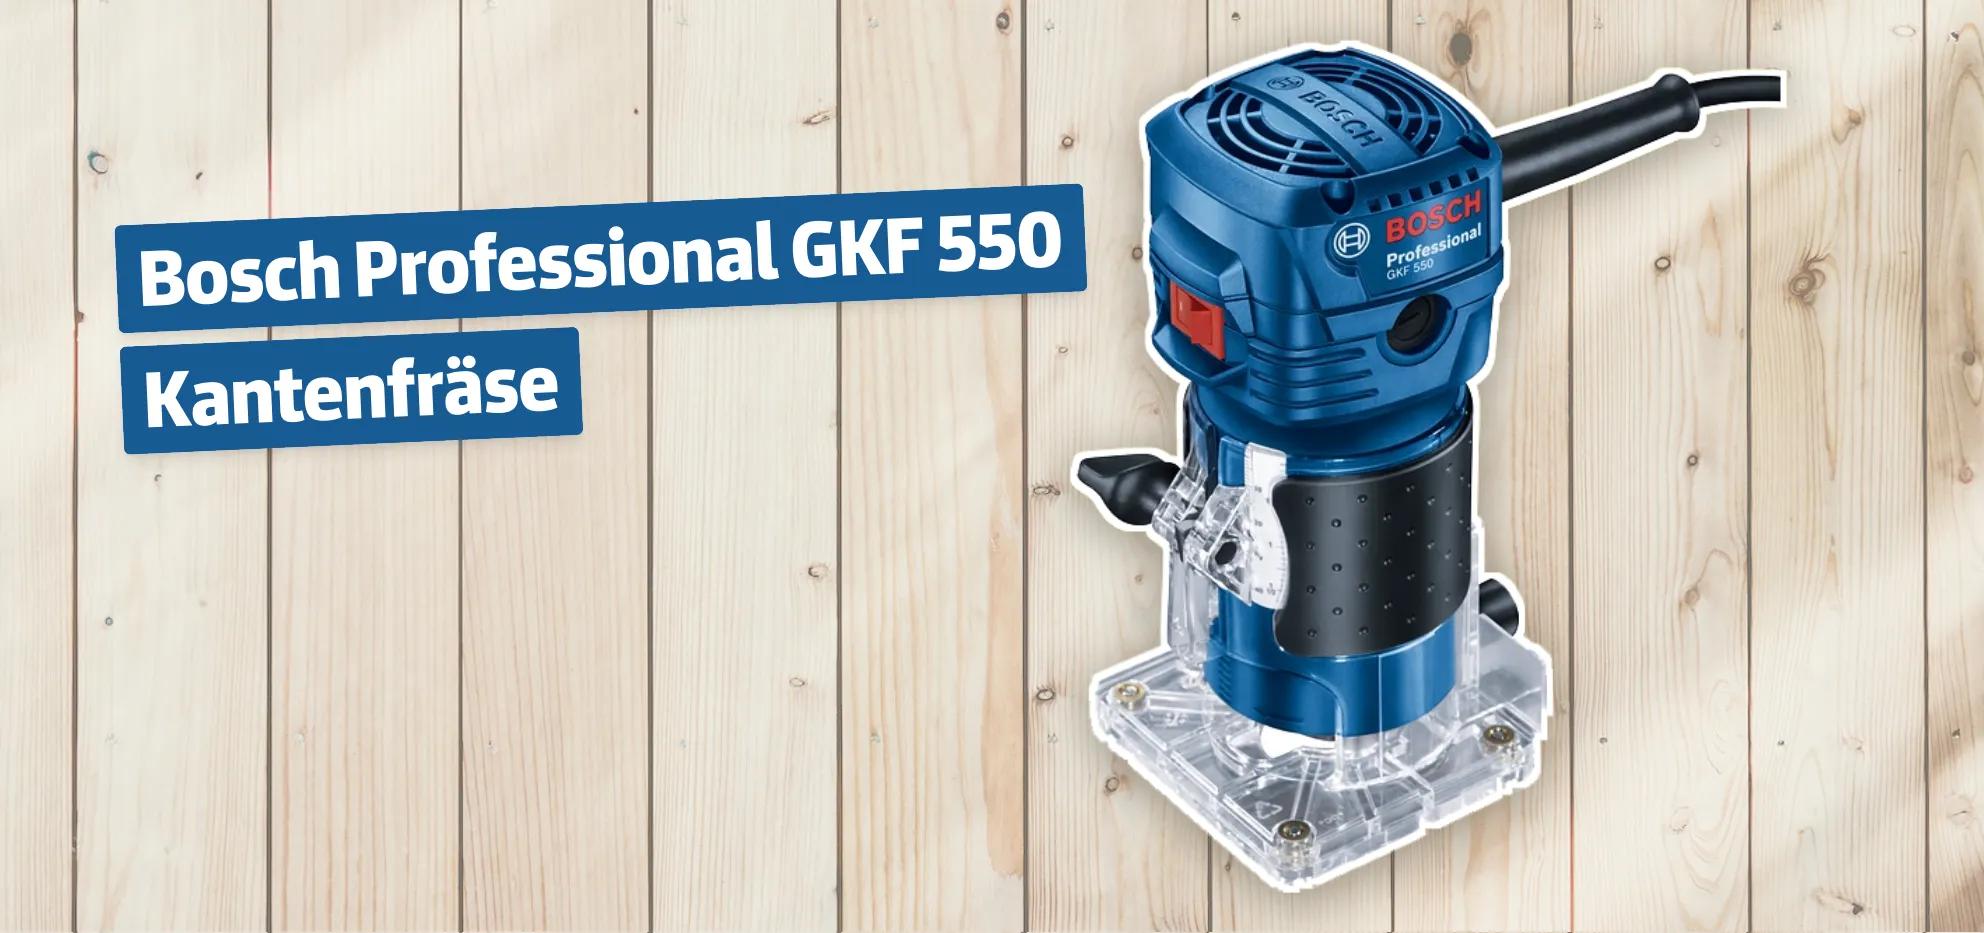 Bosch Professional GKF 550 Kantenfräse